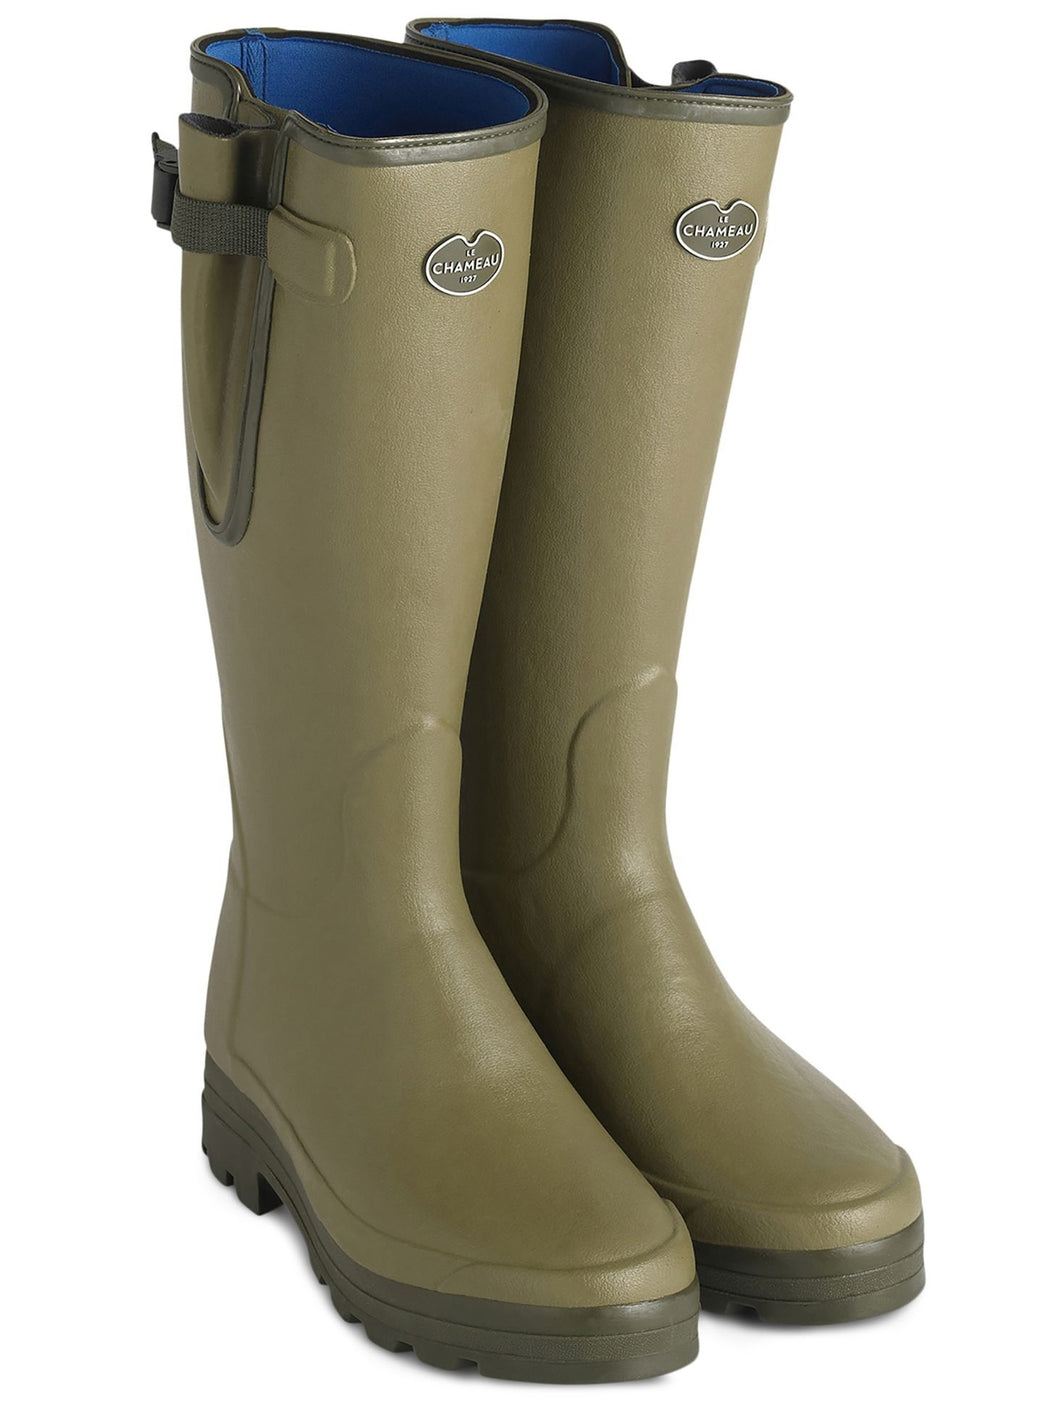 LE CHAMEAU Vierzonord Boots - Mens Neoprene Lined - Vert Vierzon